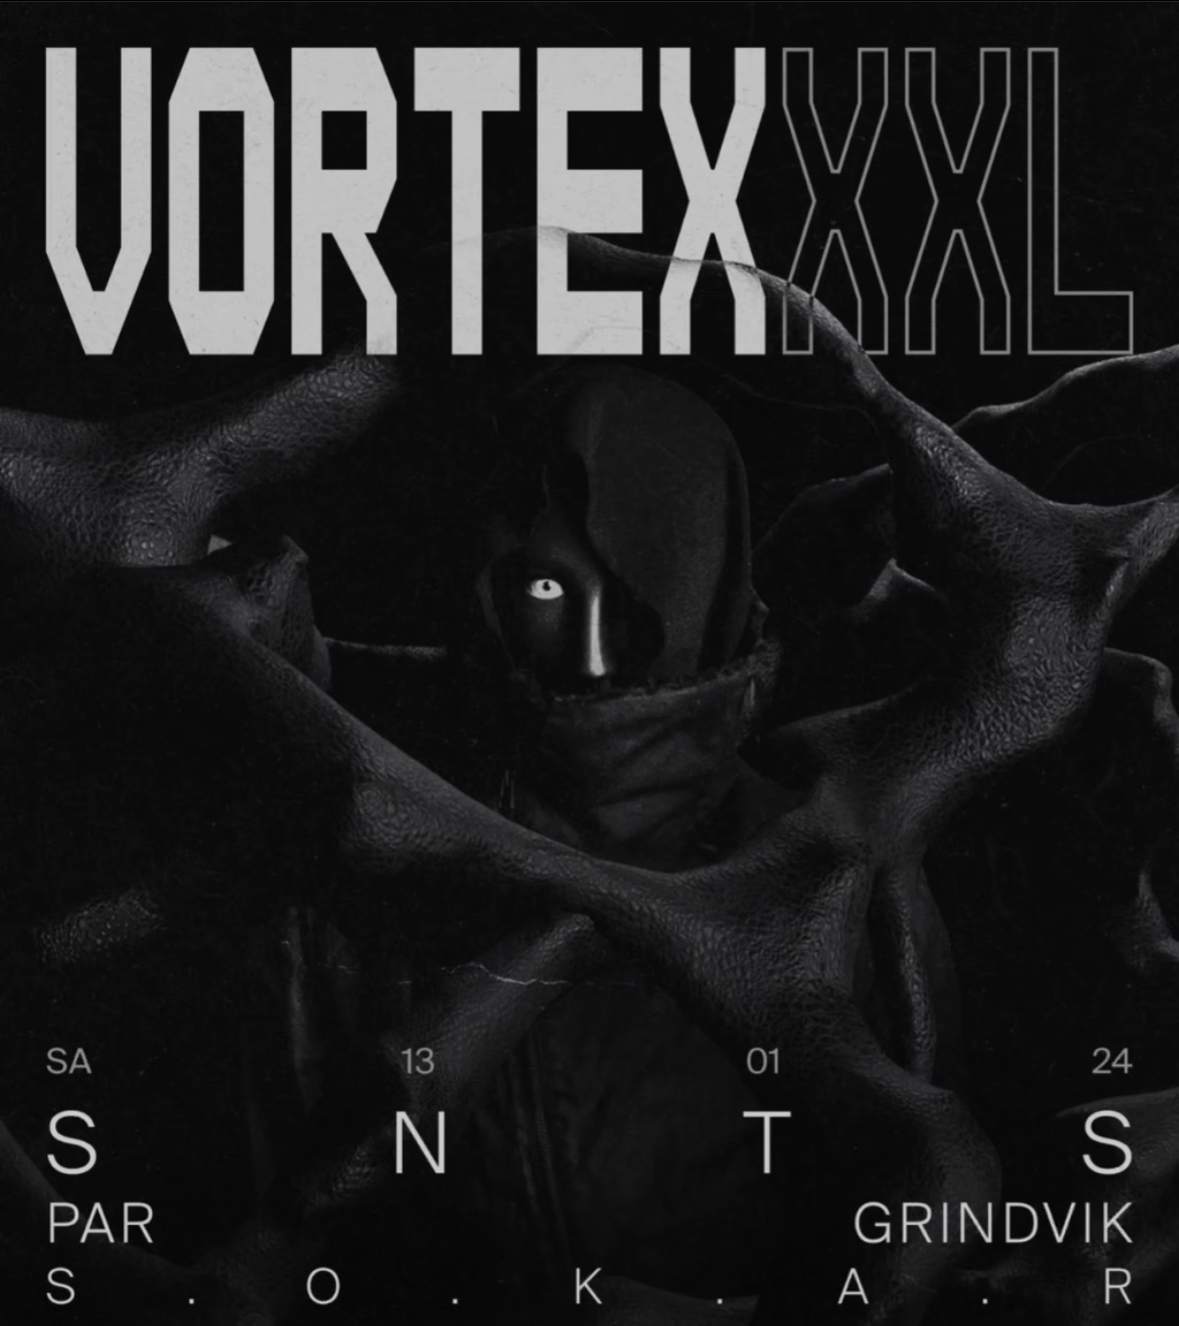 VORTEX XXL - Página frontal